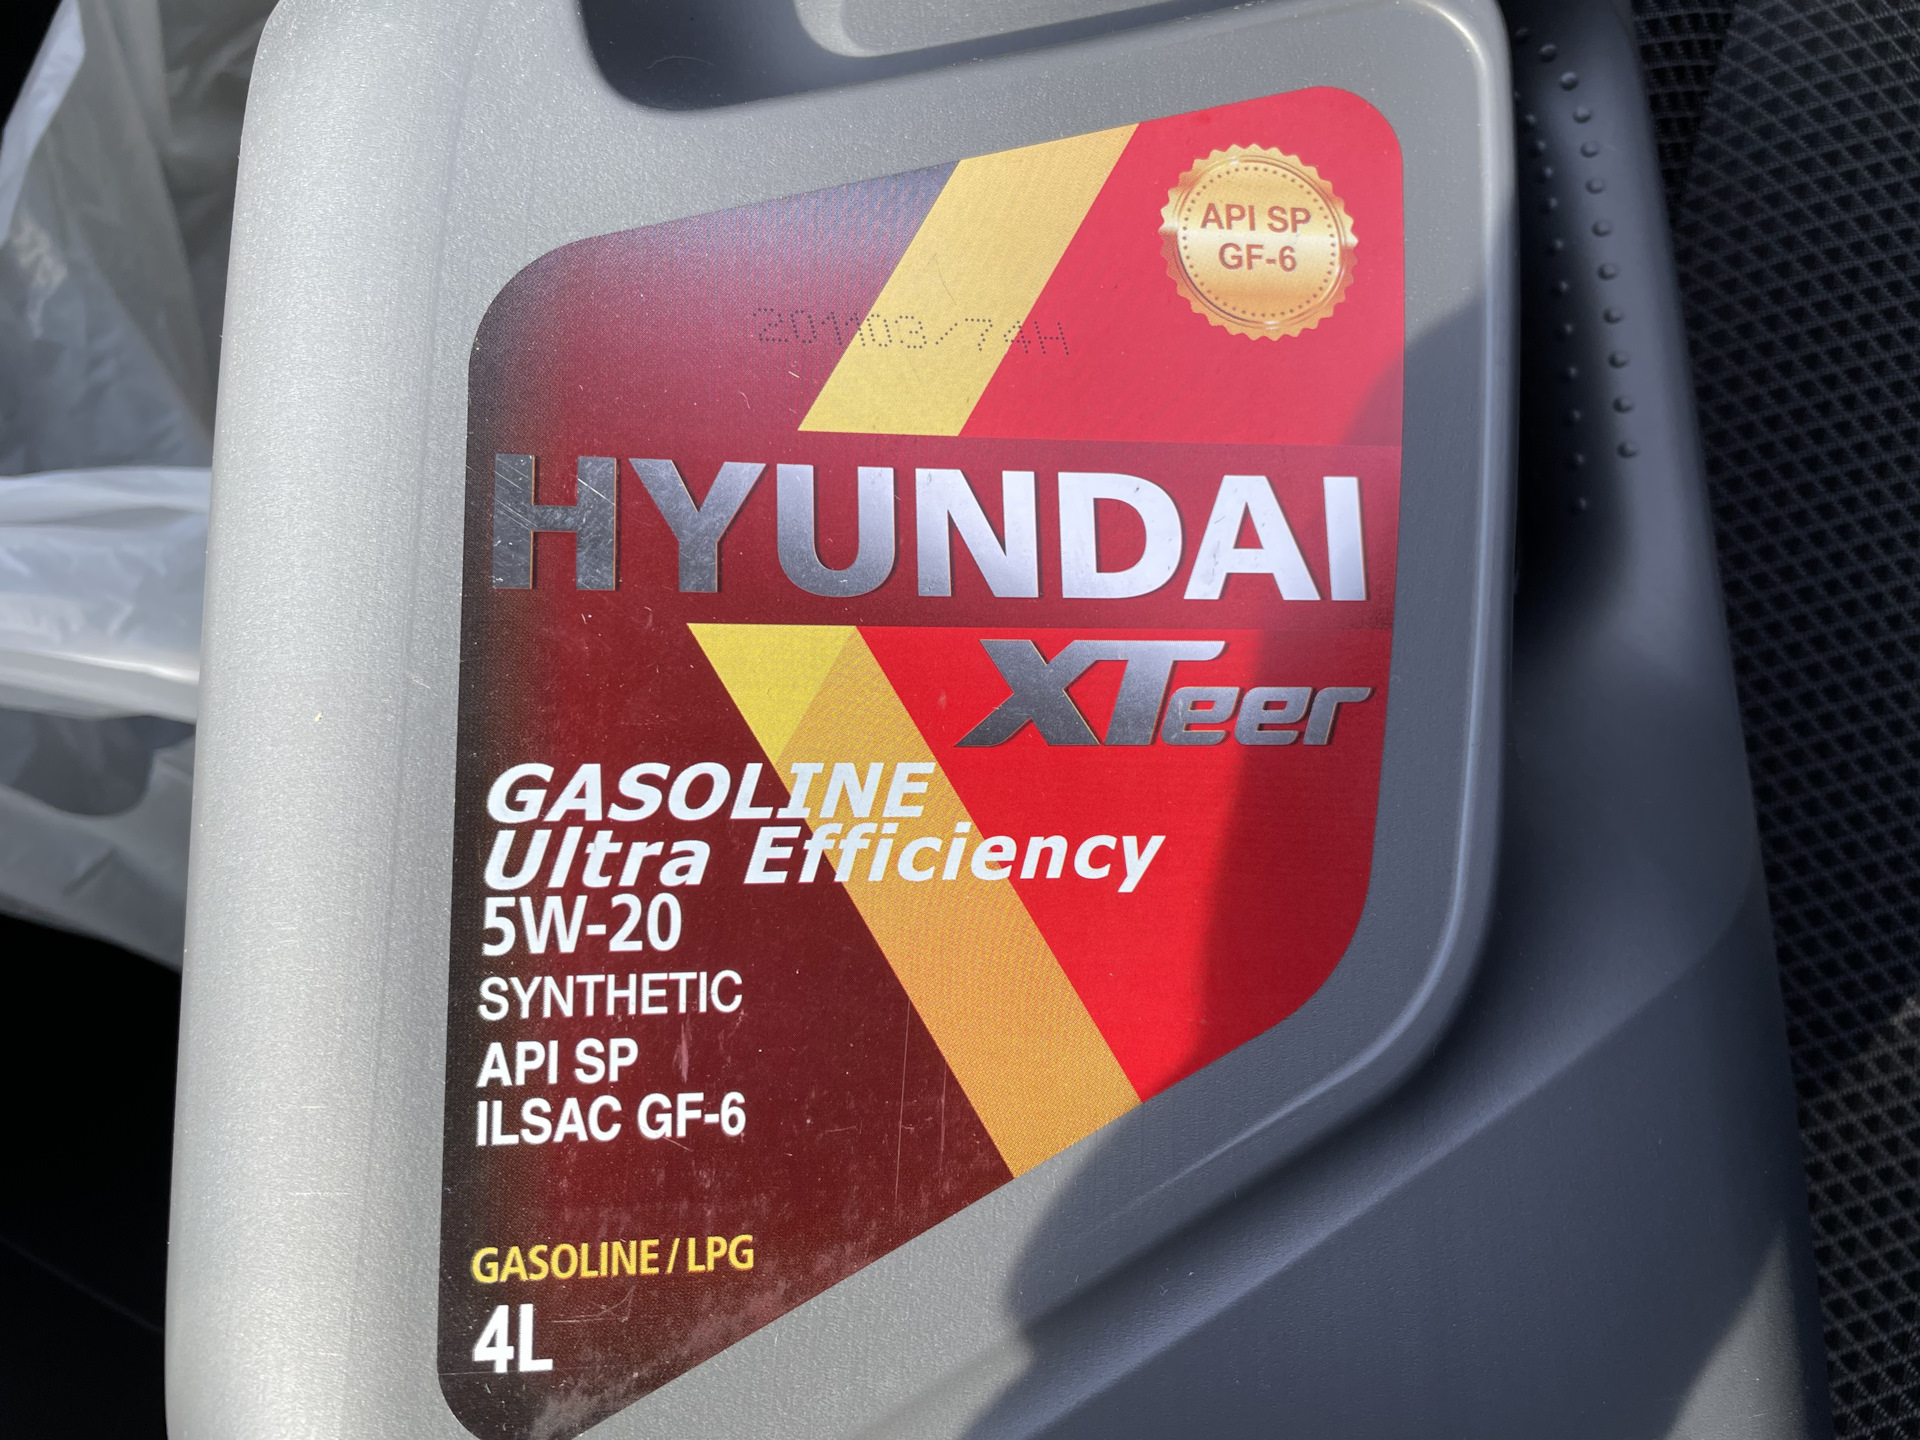 Сколько масла в крета 1.6. Моторное масло для Хендай Крета 1.6. Моторное масло для Хендай Крета 1.6 5w30. Hyundai XTEER масло моторное 5w-20 gasoline Ultra efficiency. Масло Хендай кре 1.6 синтека30.